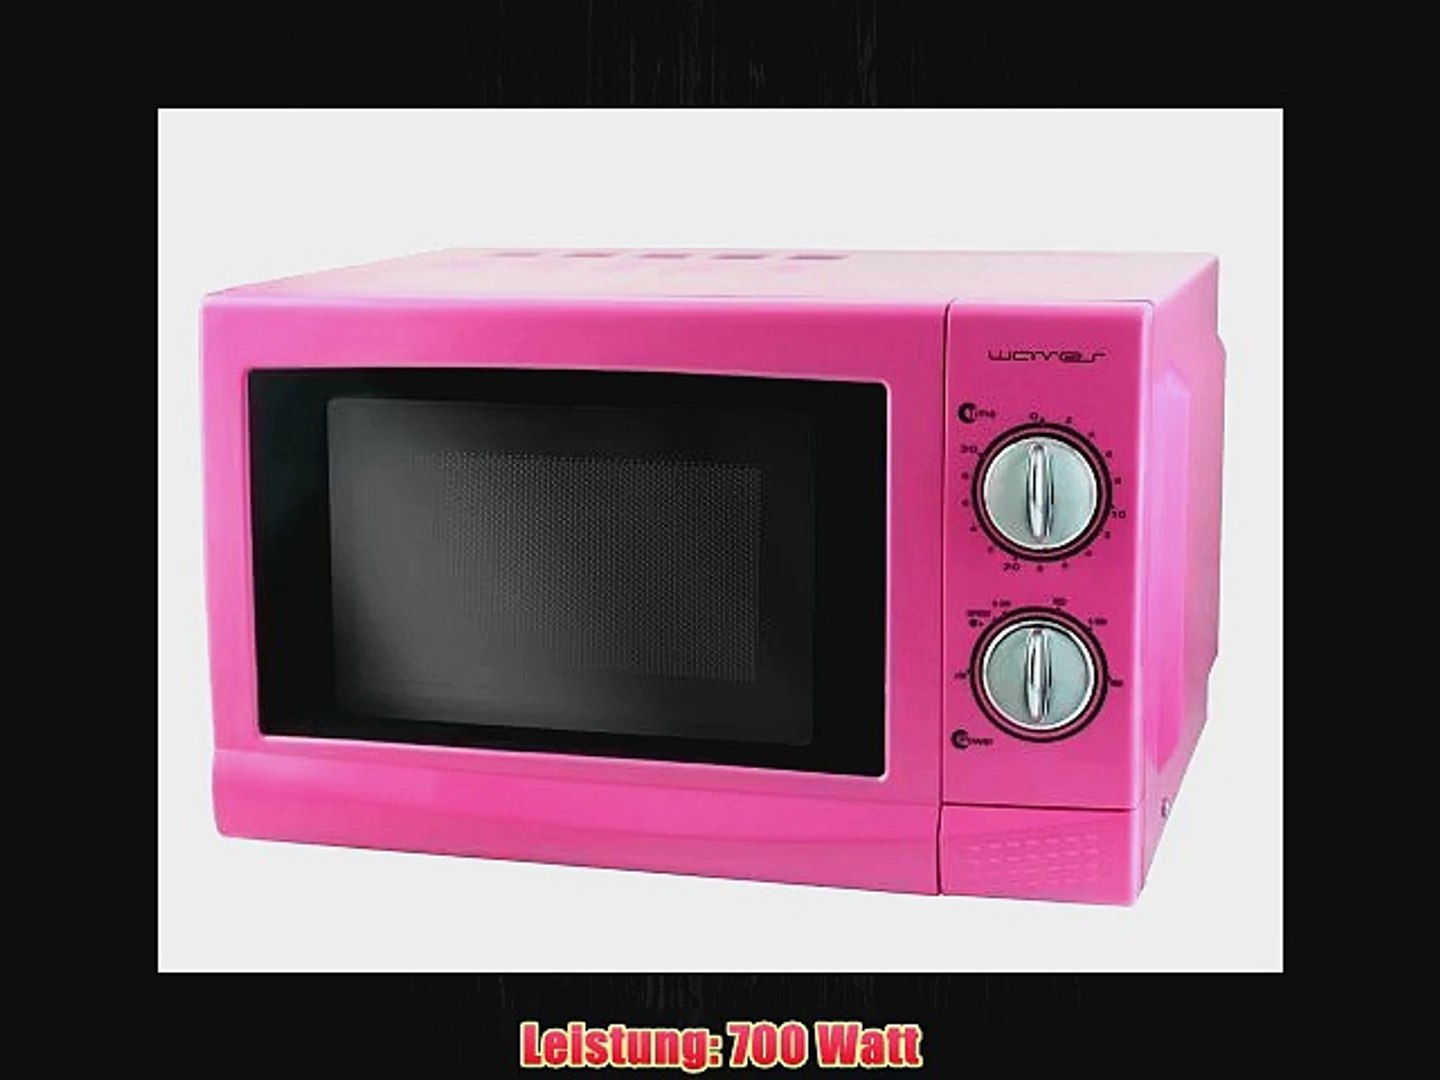 Свч печи магазин. Микроволновая печь Microwave Oven. Микроволновая печь самсунг розовая. Микроволновка Теслер розовая. Вайлдберриз микроволновая печь.